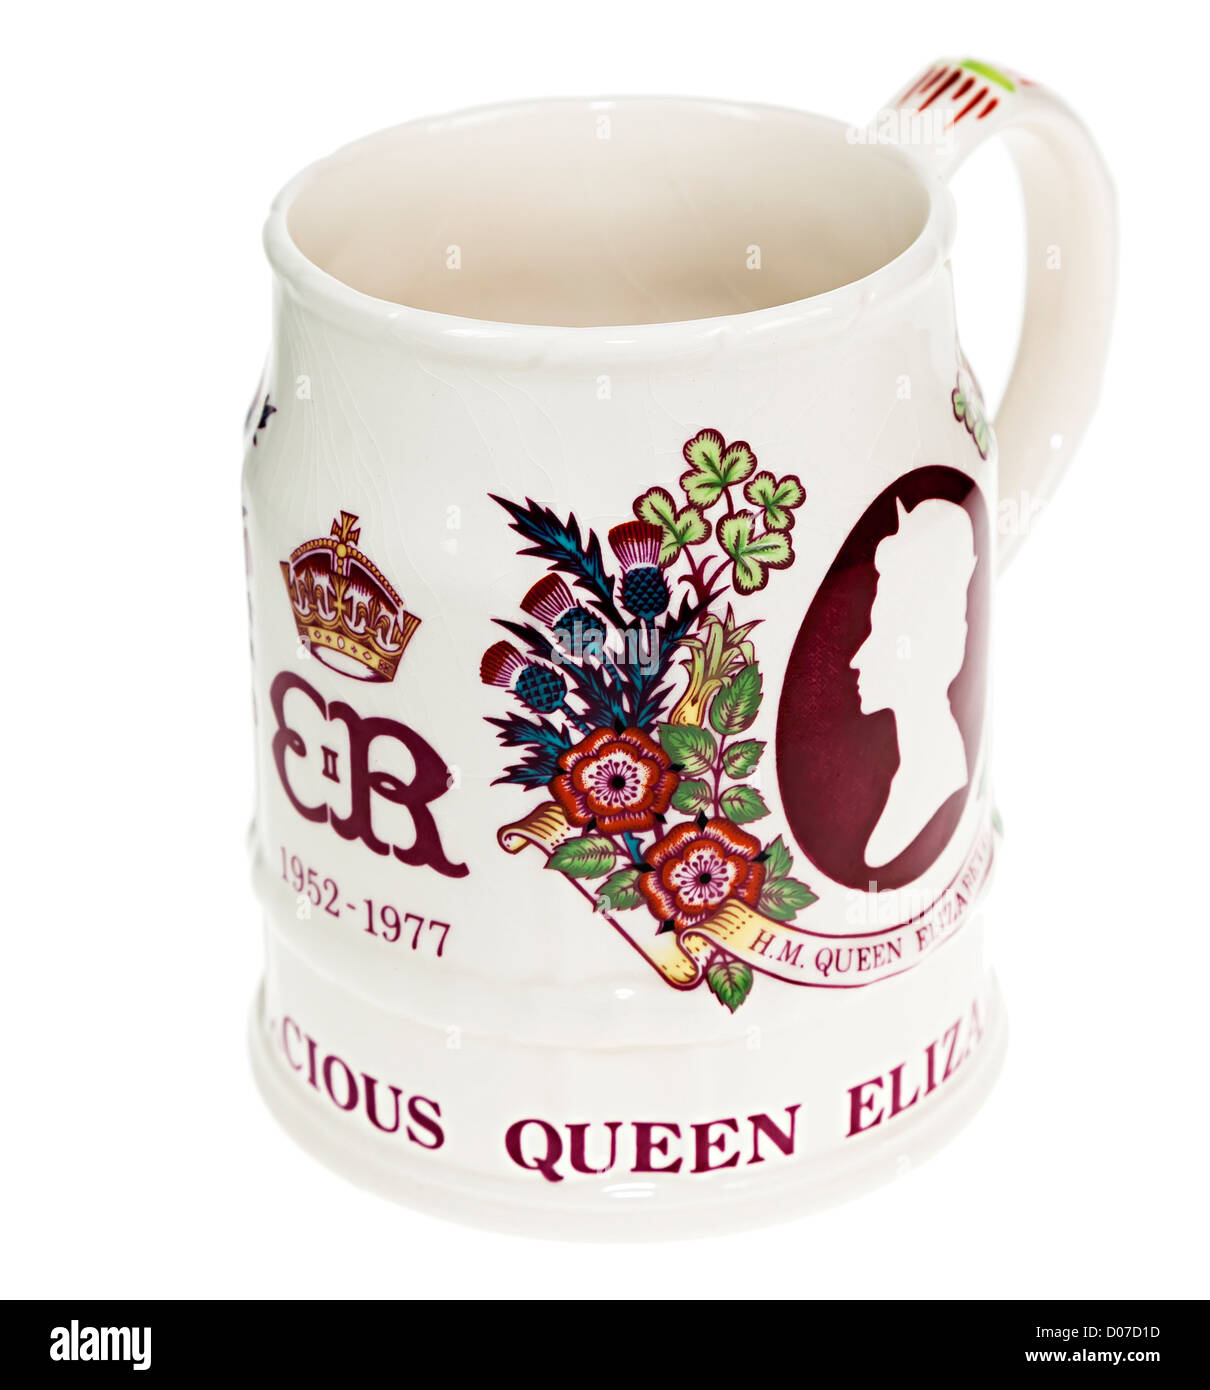 Jubilé de la reine Elizabeth II mug commémorative, England, UK Banque D'Images